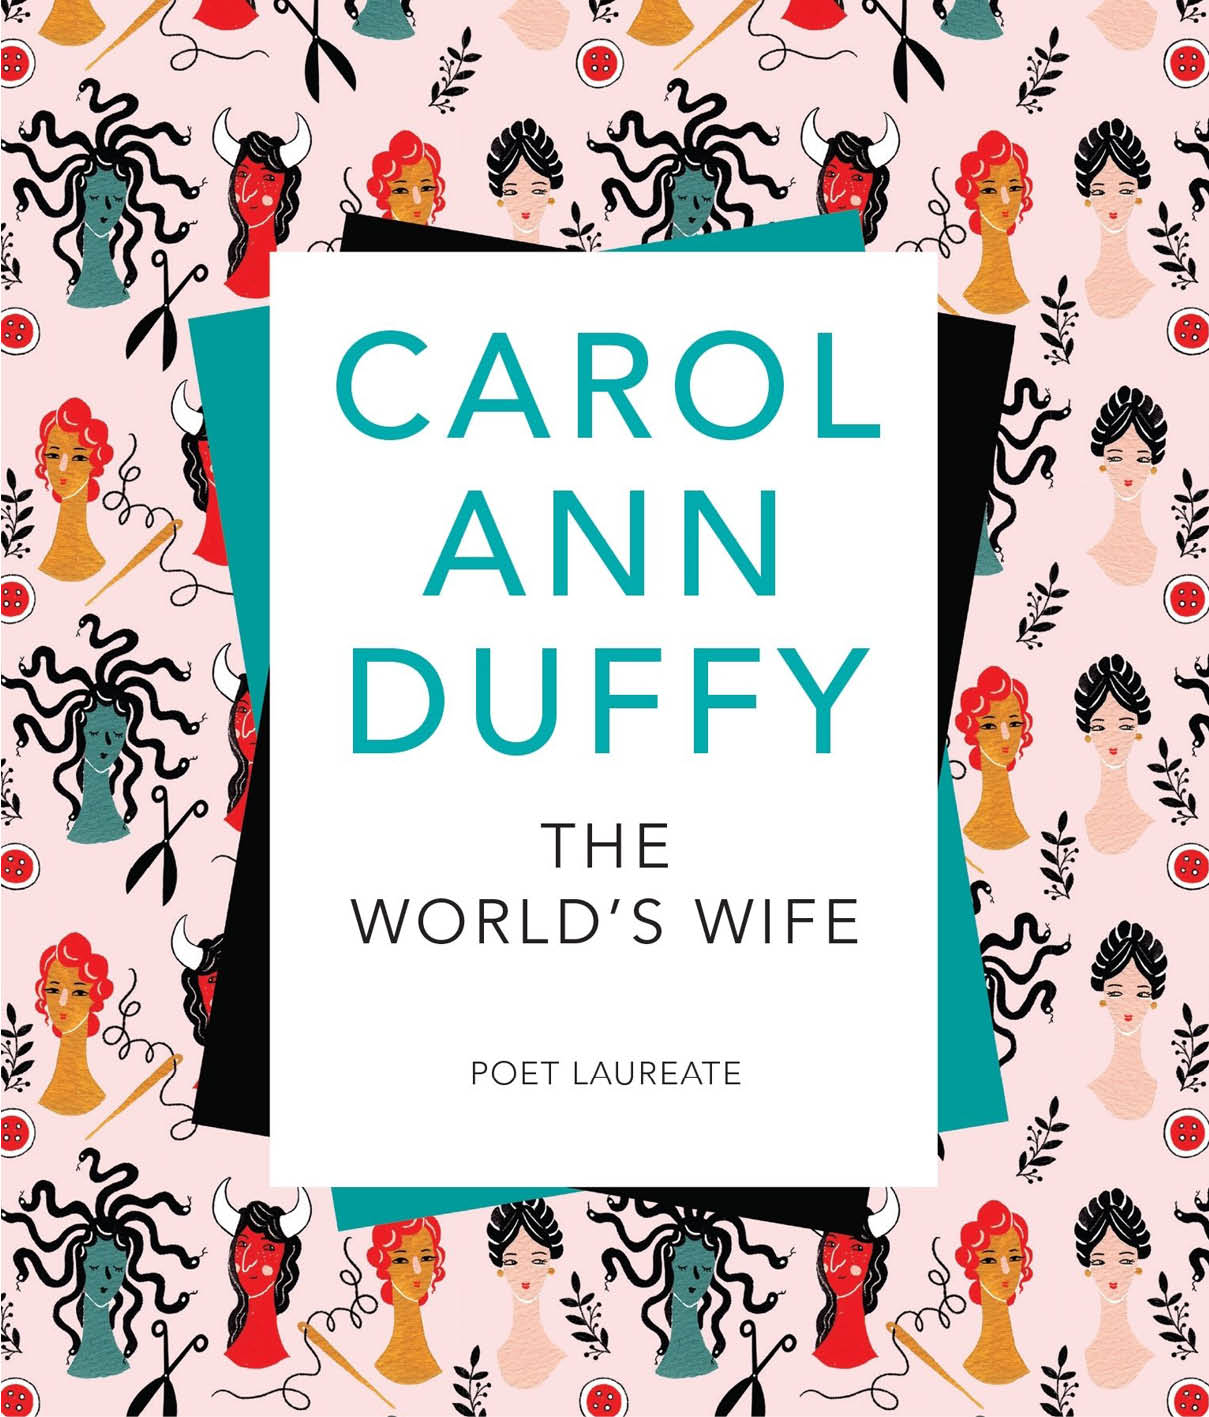 The World’s Wife by Carol Ann Duffy